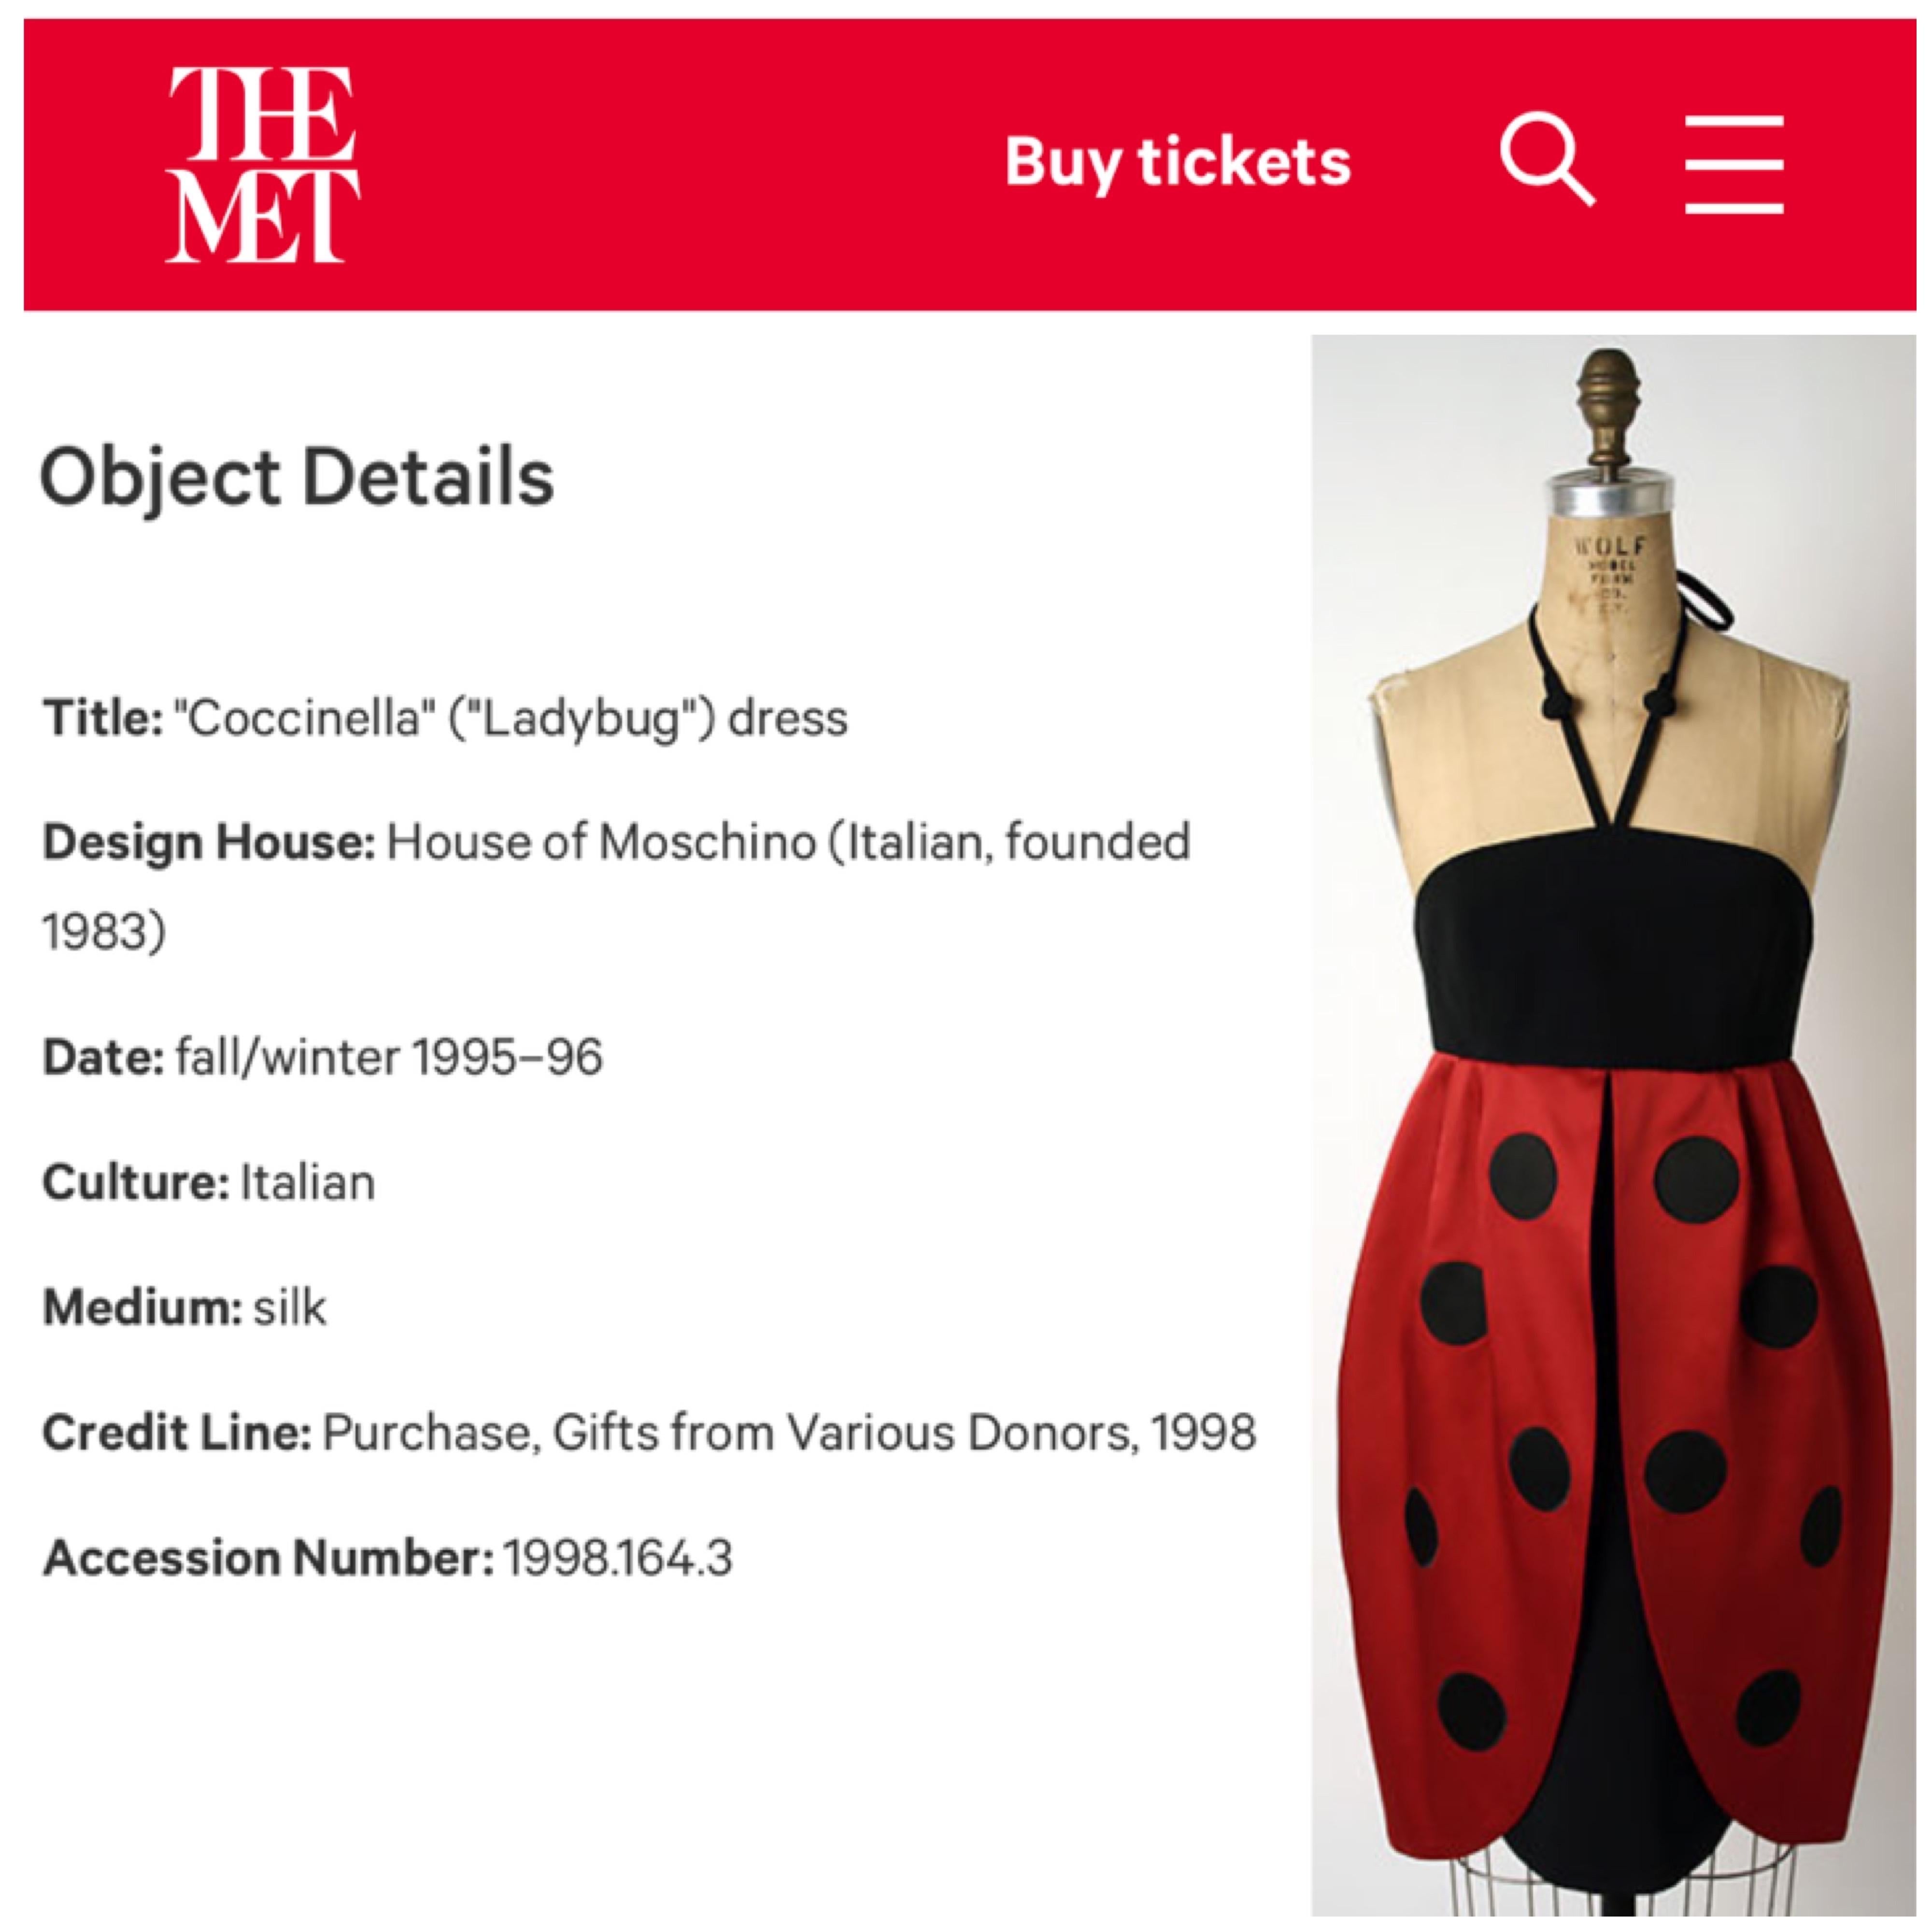 Sensationnelle robe en soie à motif de coccinelle 'Coccinella' de Moschino Couture, datant de sa collection automne-hiver 1995. Comme indiqué, ce vêtement ultra rare et absolument adorable est également archivé au Metropolitan Museum of Art !